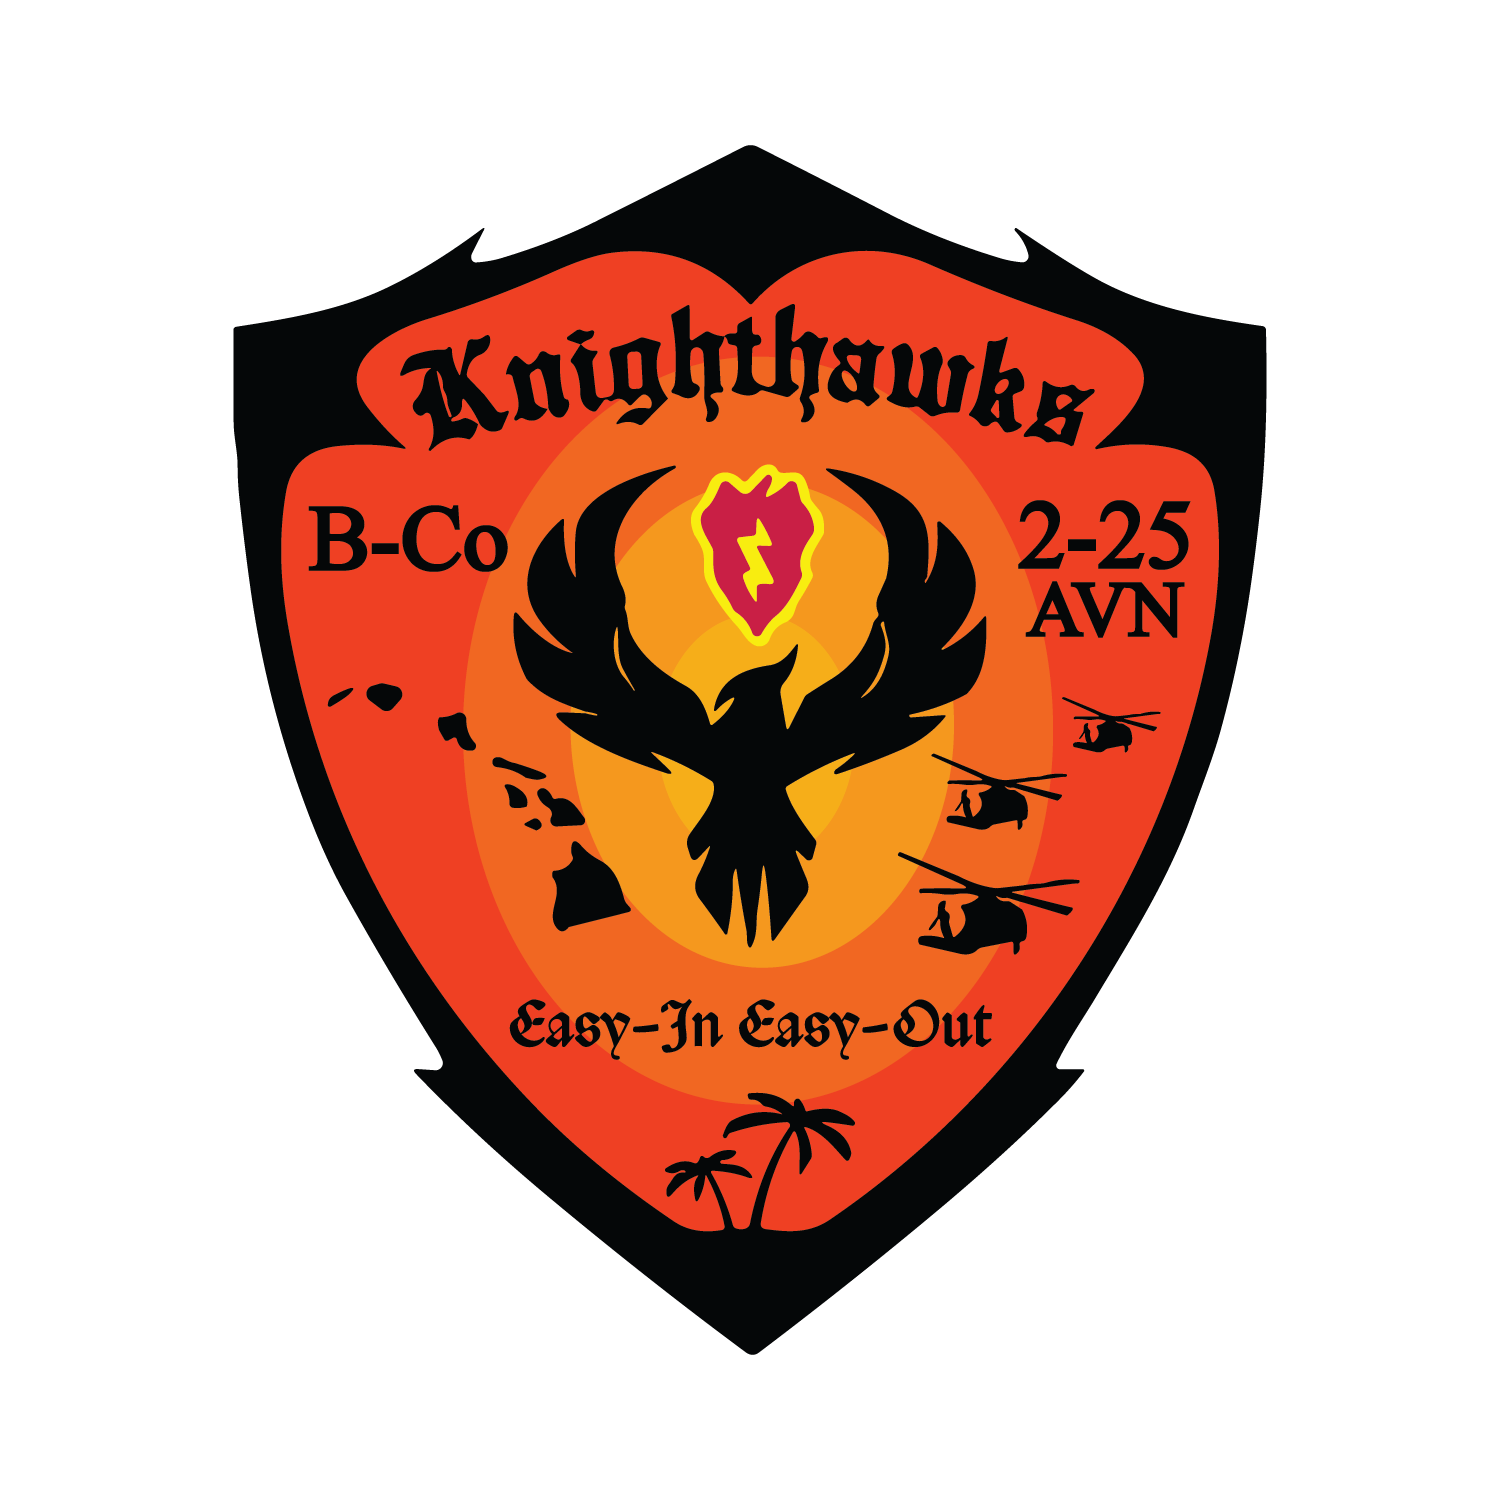 B Co. 2-25 AVN "Knighthawks"